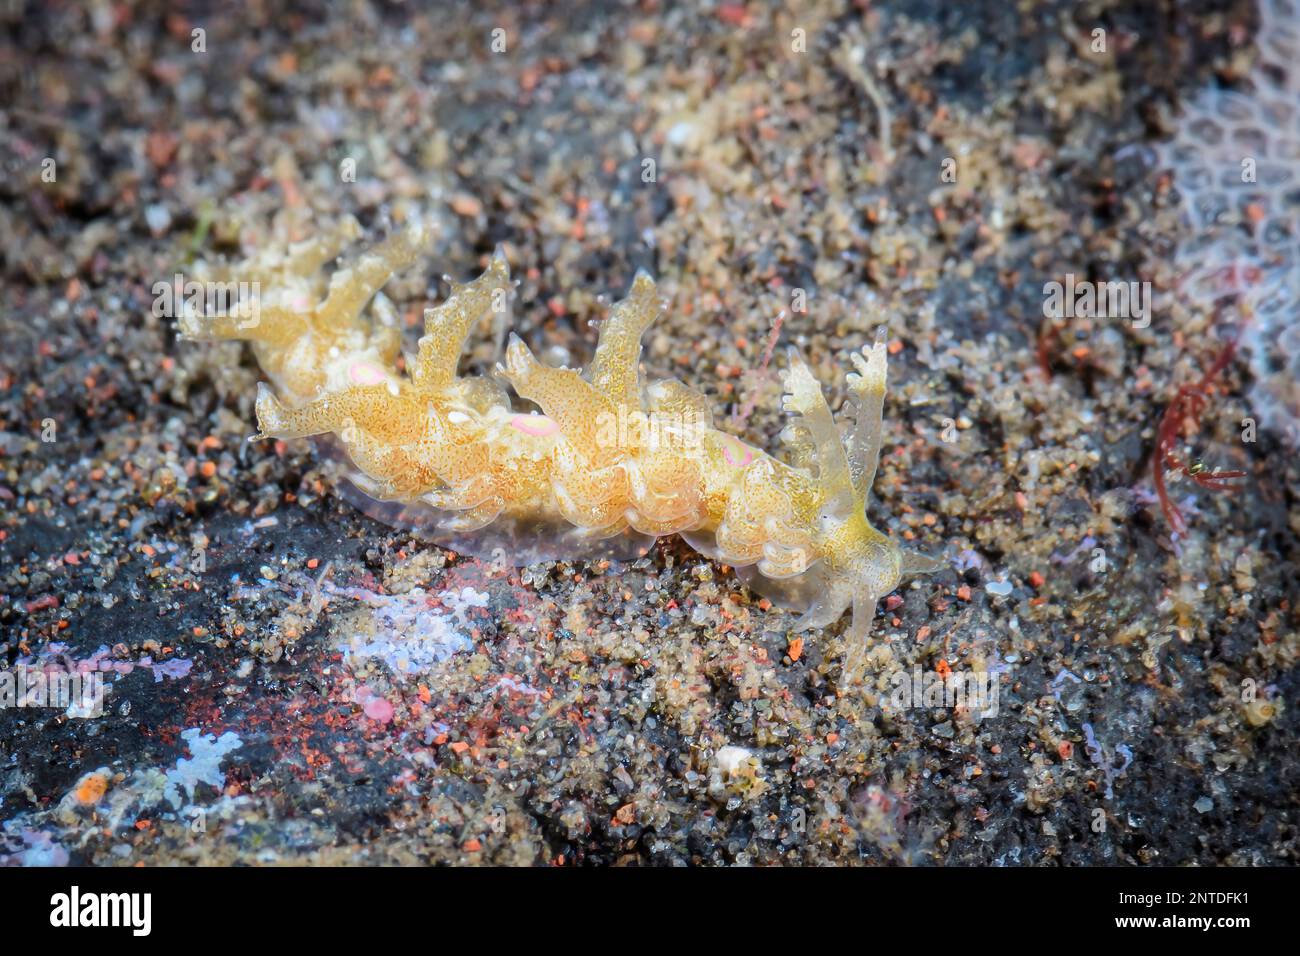 Sea slug or Nudibranch, Limenandra confusa, Tulamben, Bali, Indonesia, Pacific Stock Photo